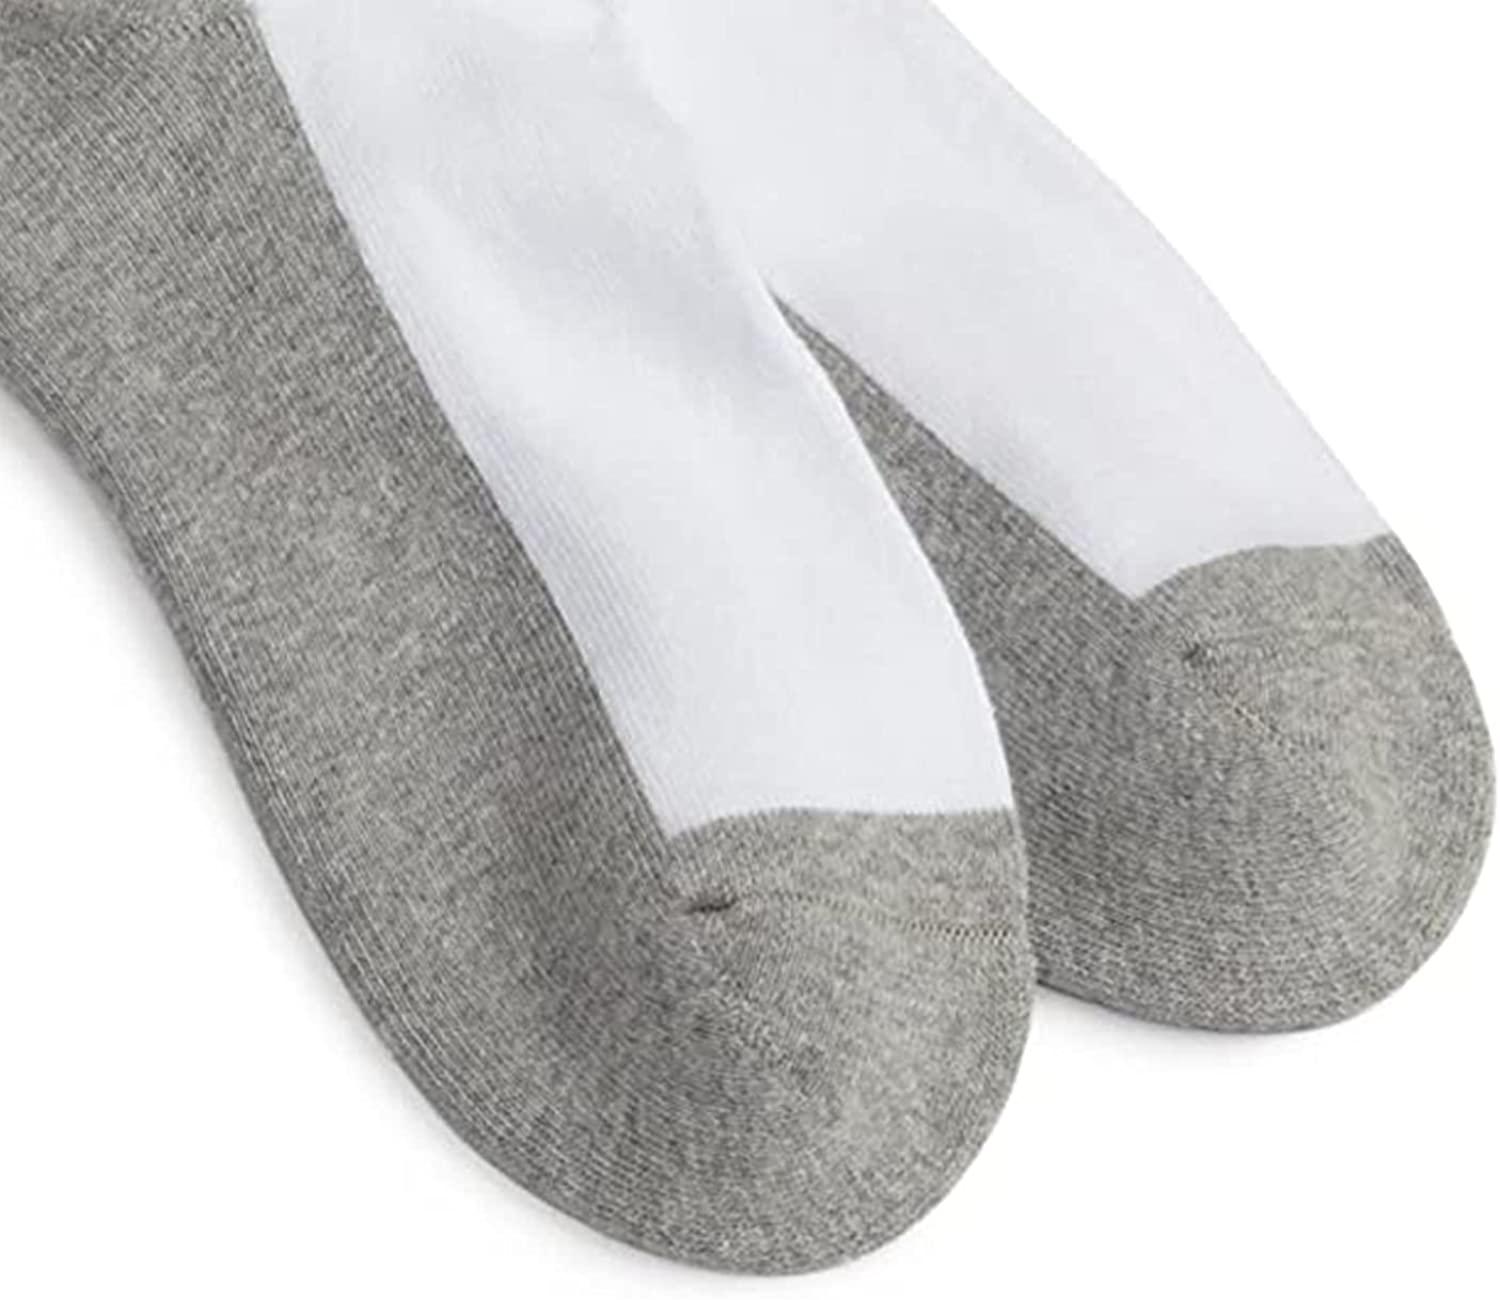 Jefferies Socks Sport Half Cushion Tab Low Cut Socks 6 Pair Pack